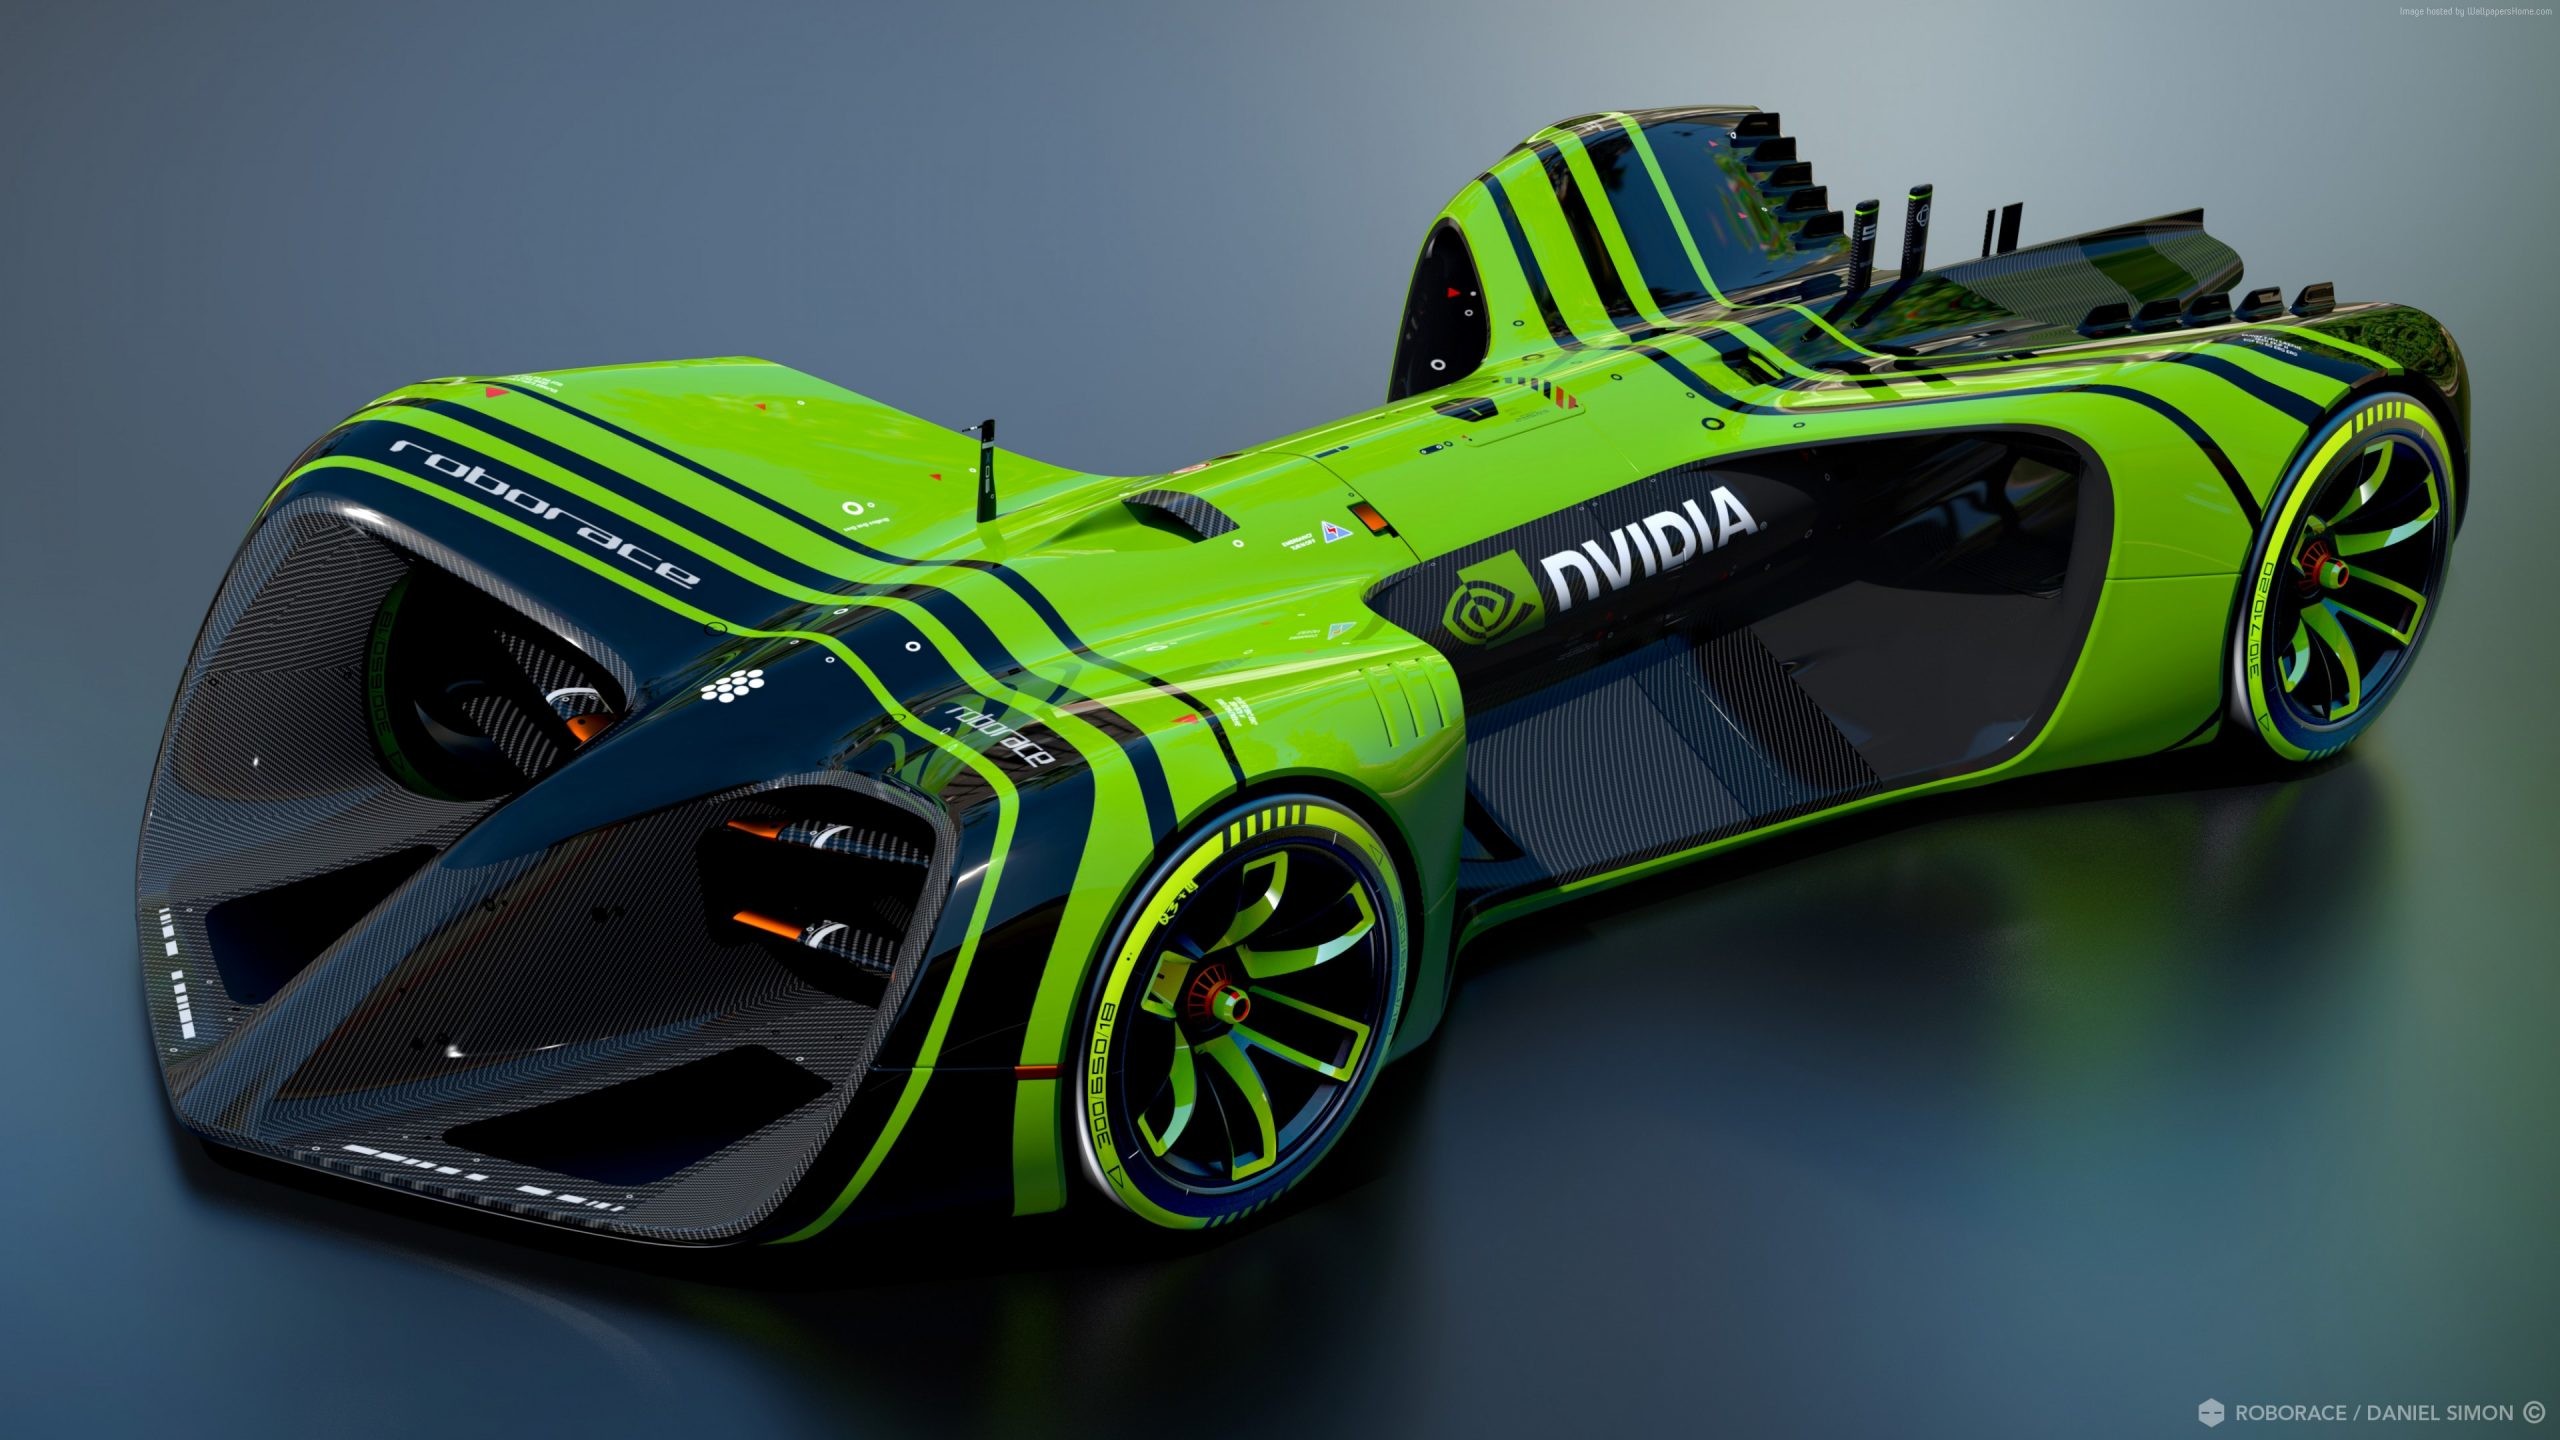 Roborace NVidia, future cars, Formula E season, electric cars, Daniel Simon